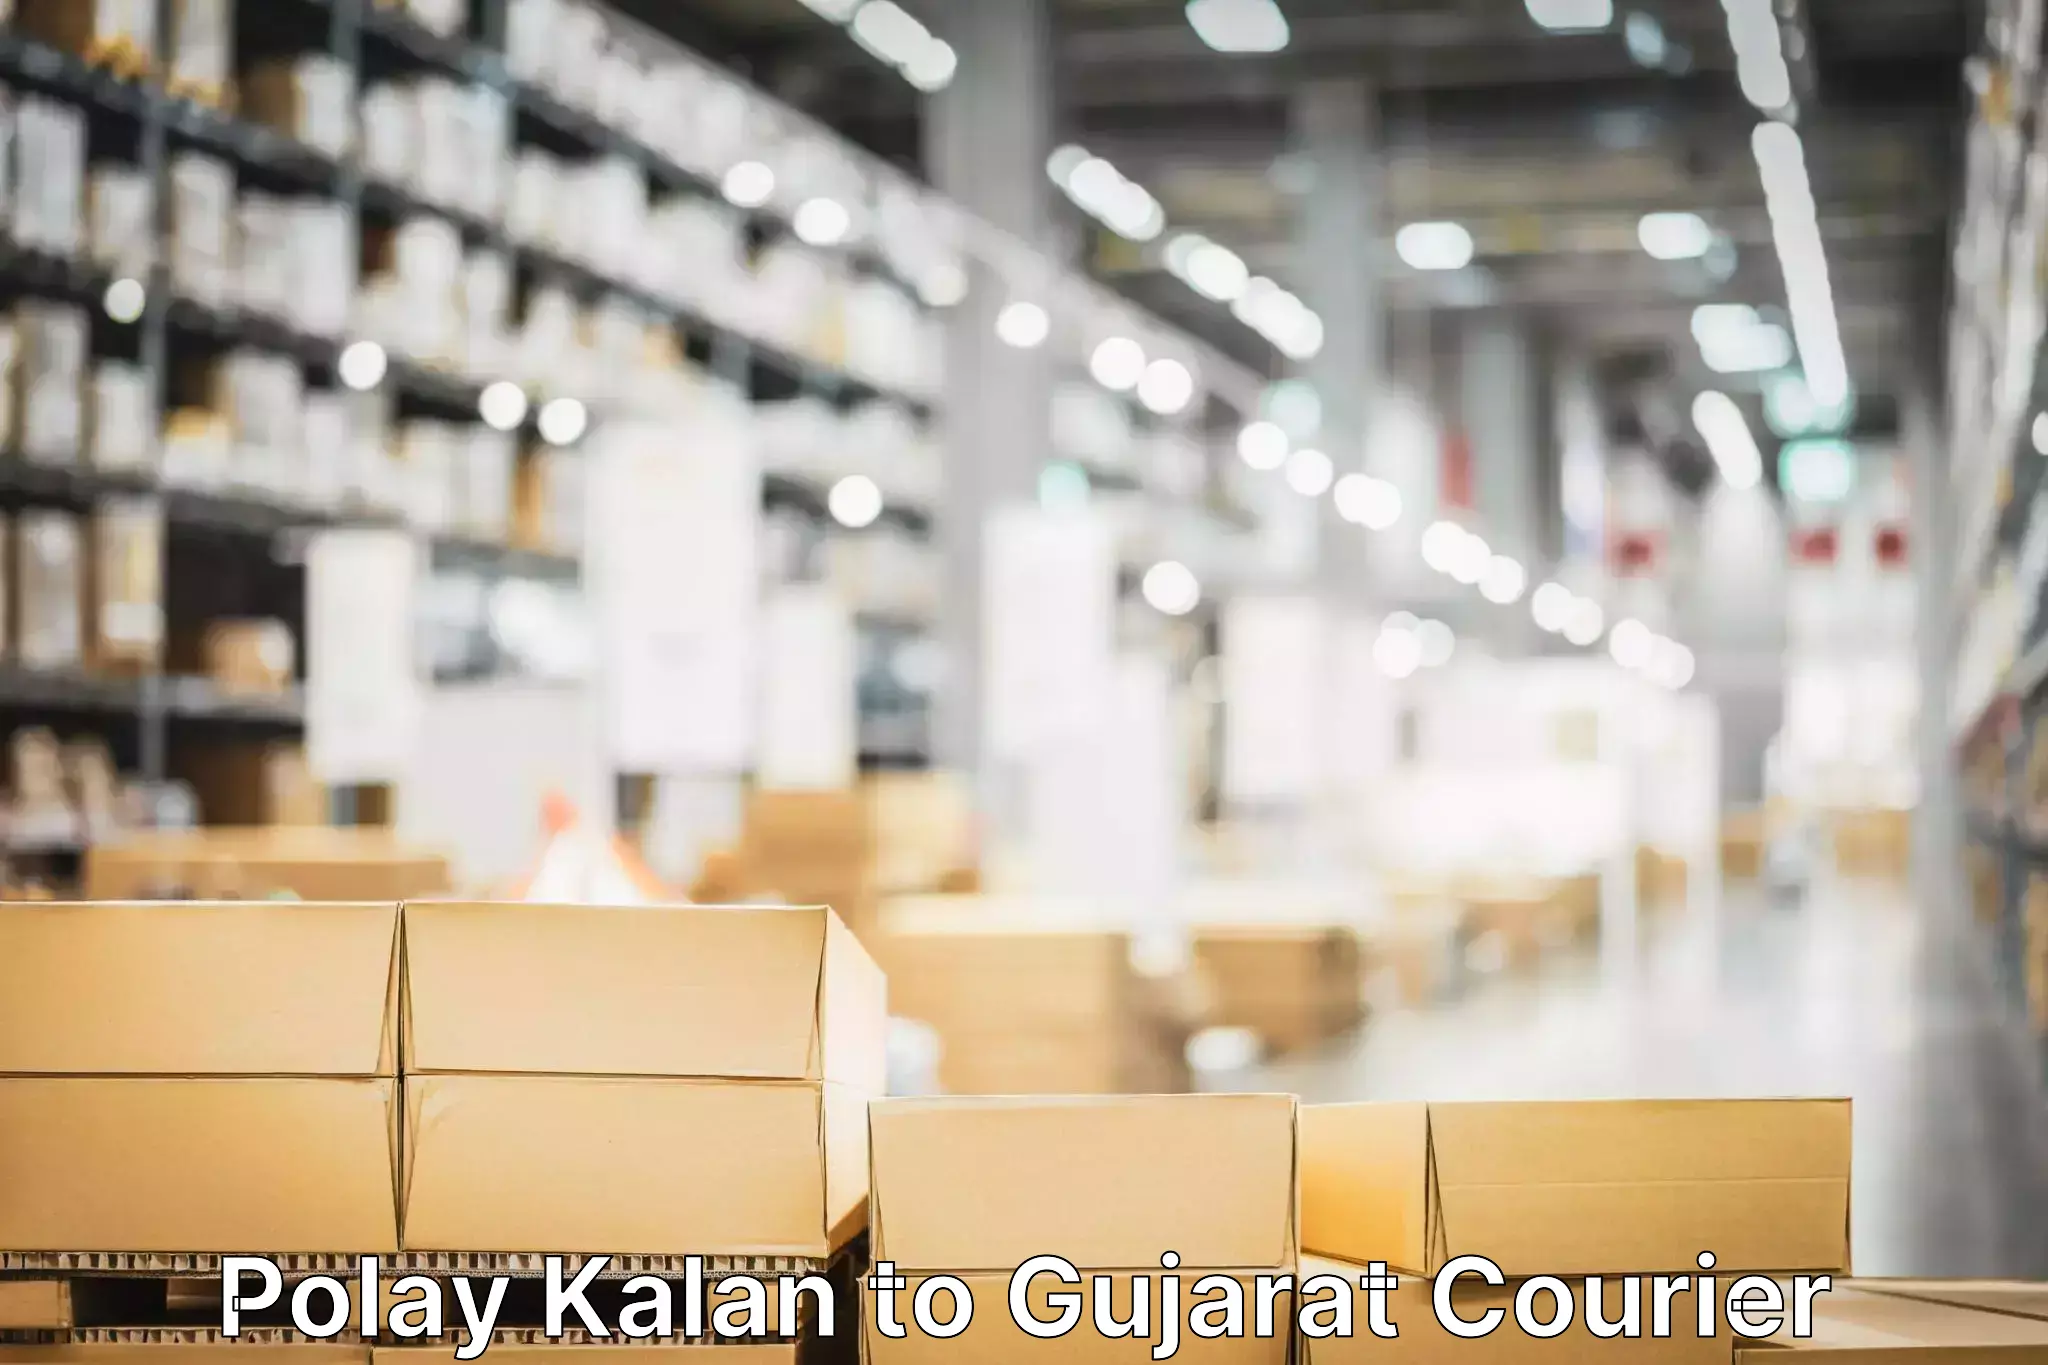 Express courier facilities Polay Kalan to Gujarat